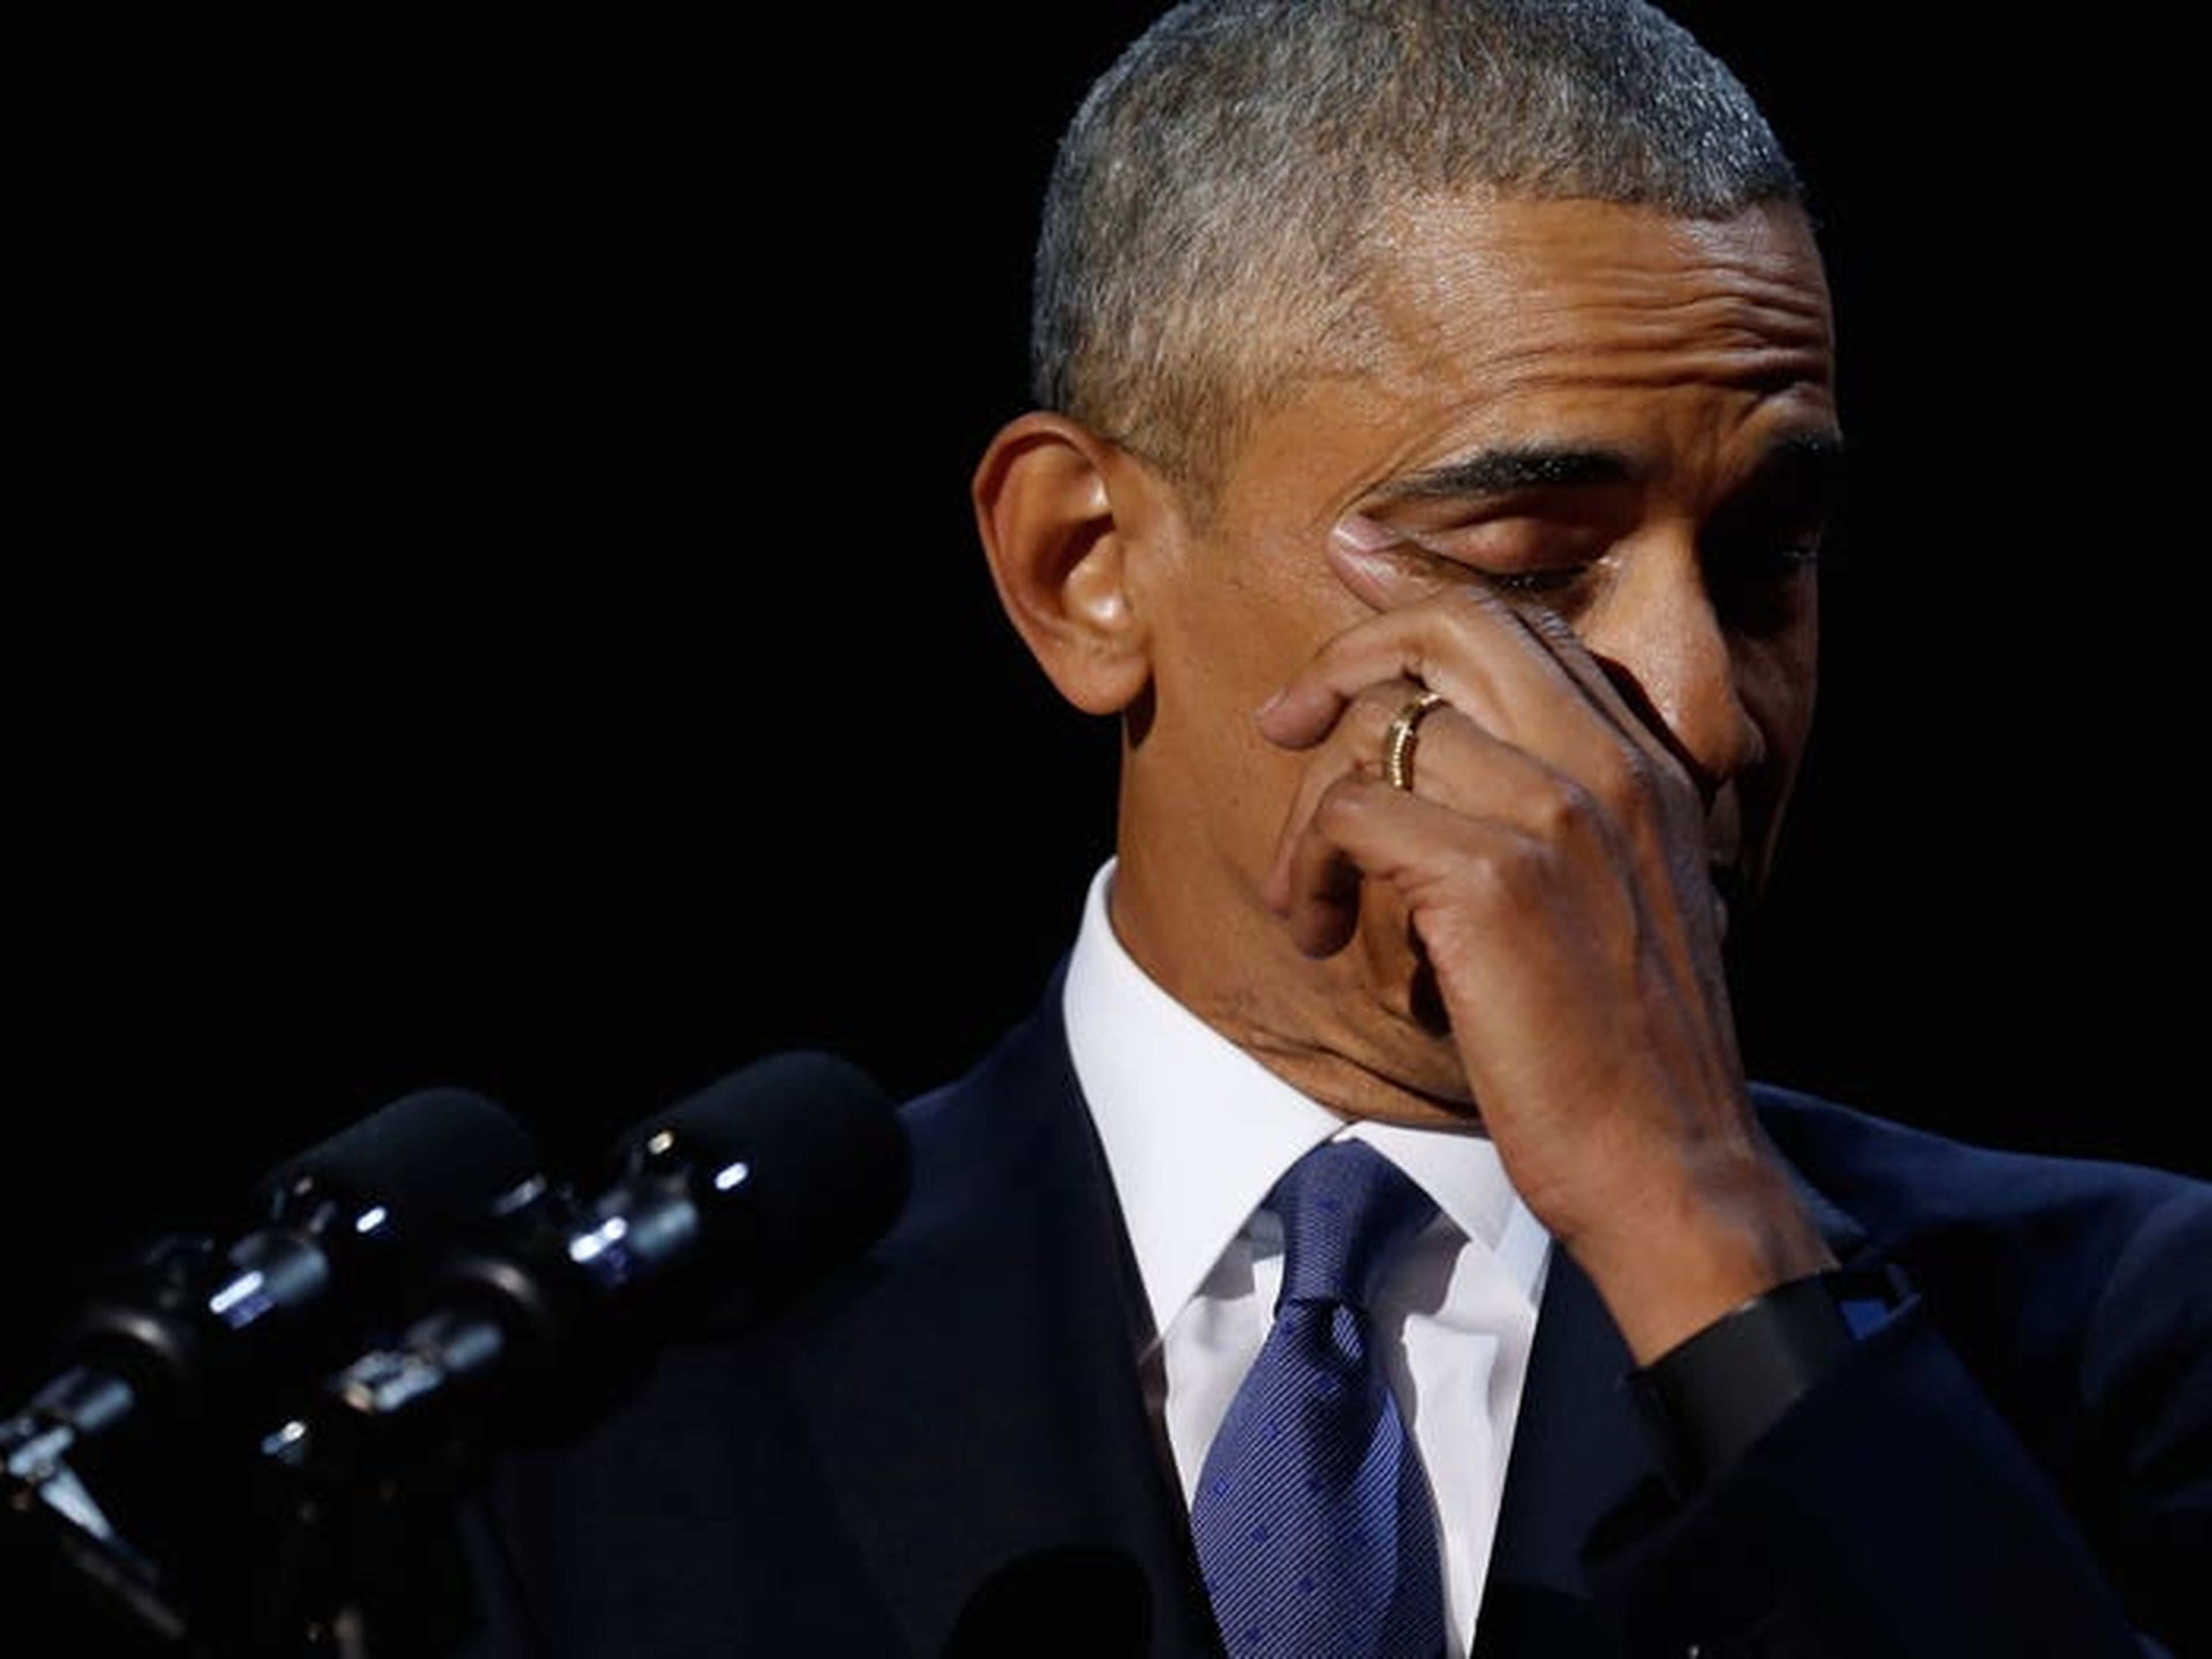 El ex presidente de Estados Unidos, Barack Obama, se enjuga las lágrimas mientras pronuncia su discurso de despedida en Chicago, Illinois.